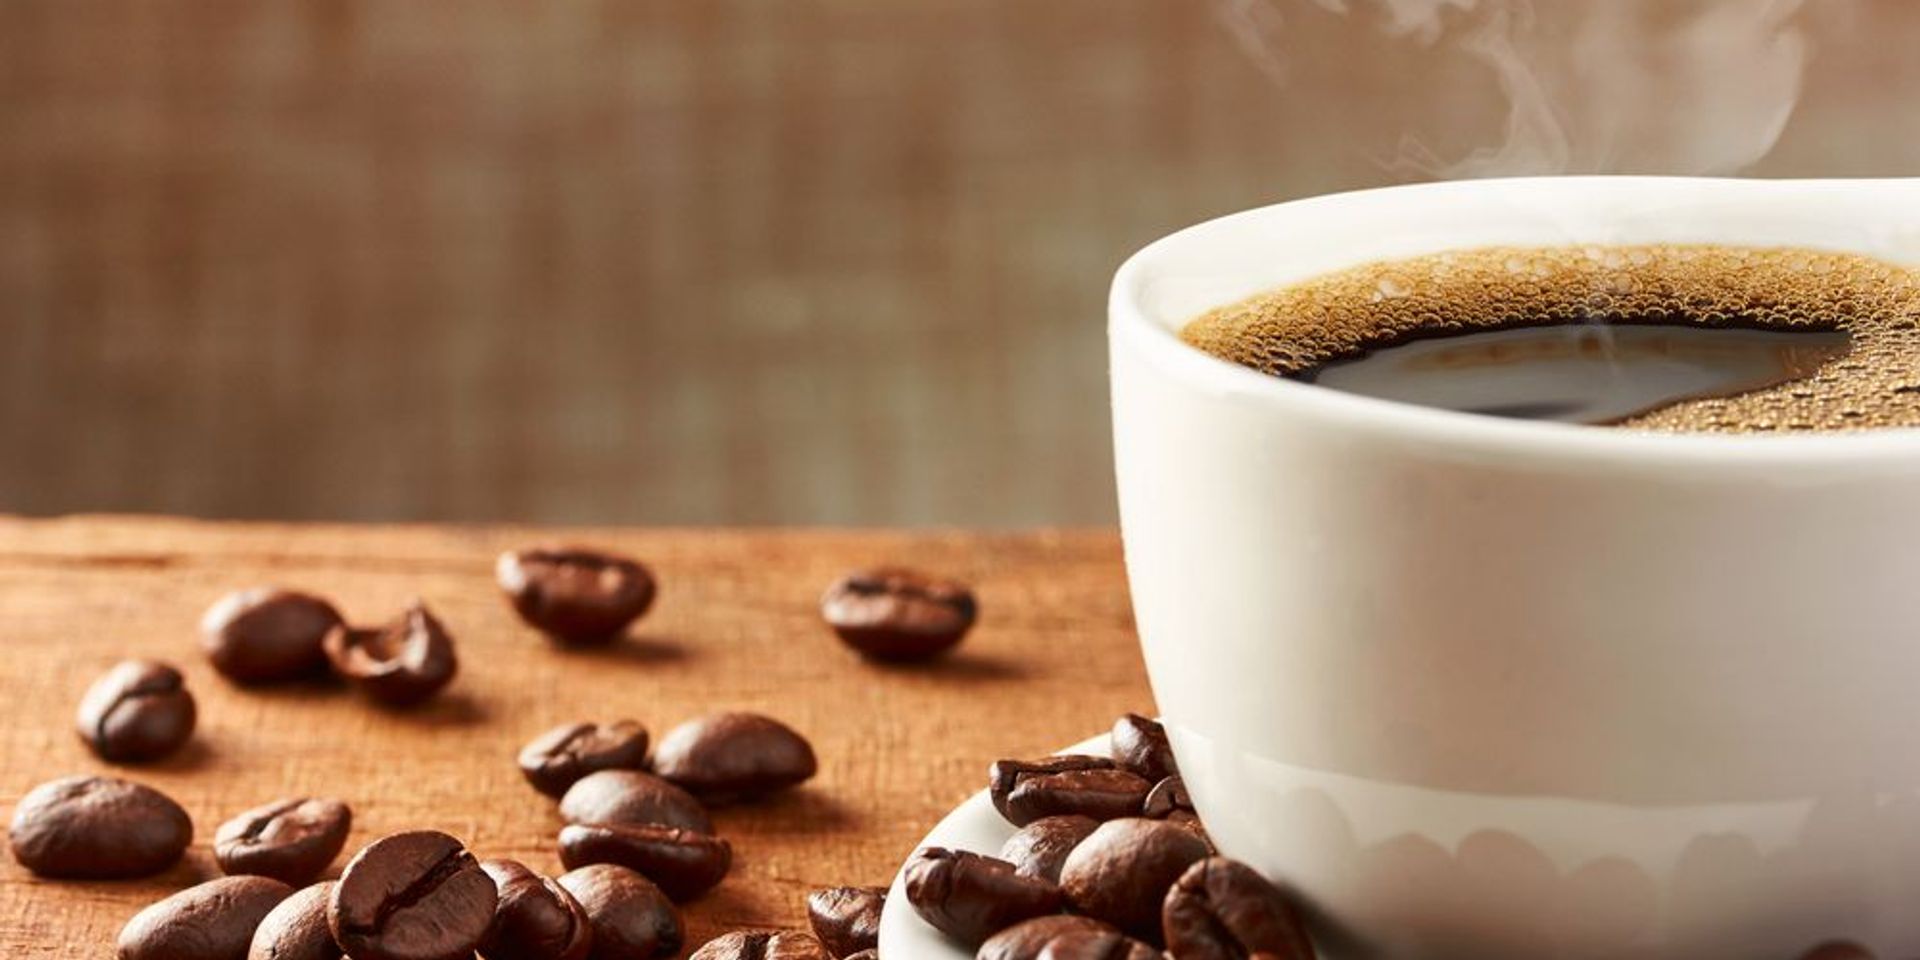 Így hat a kávé jótékonyan az egészségünkre